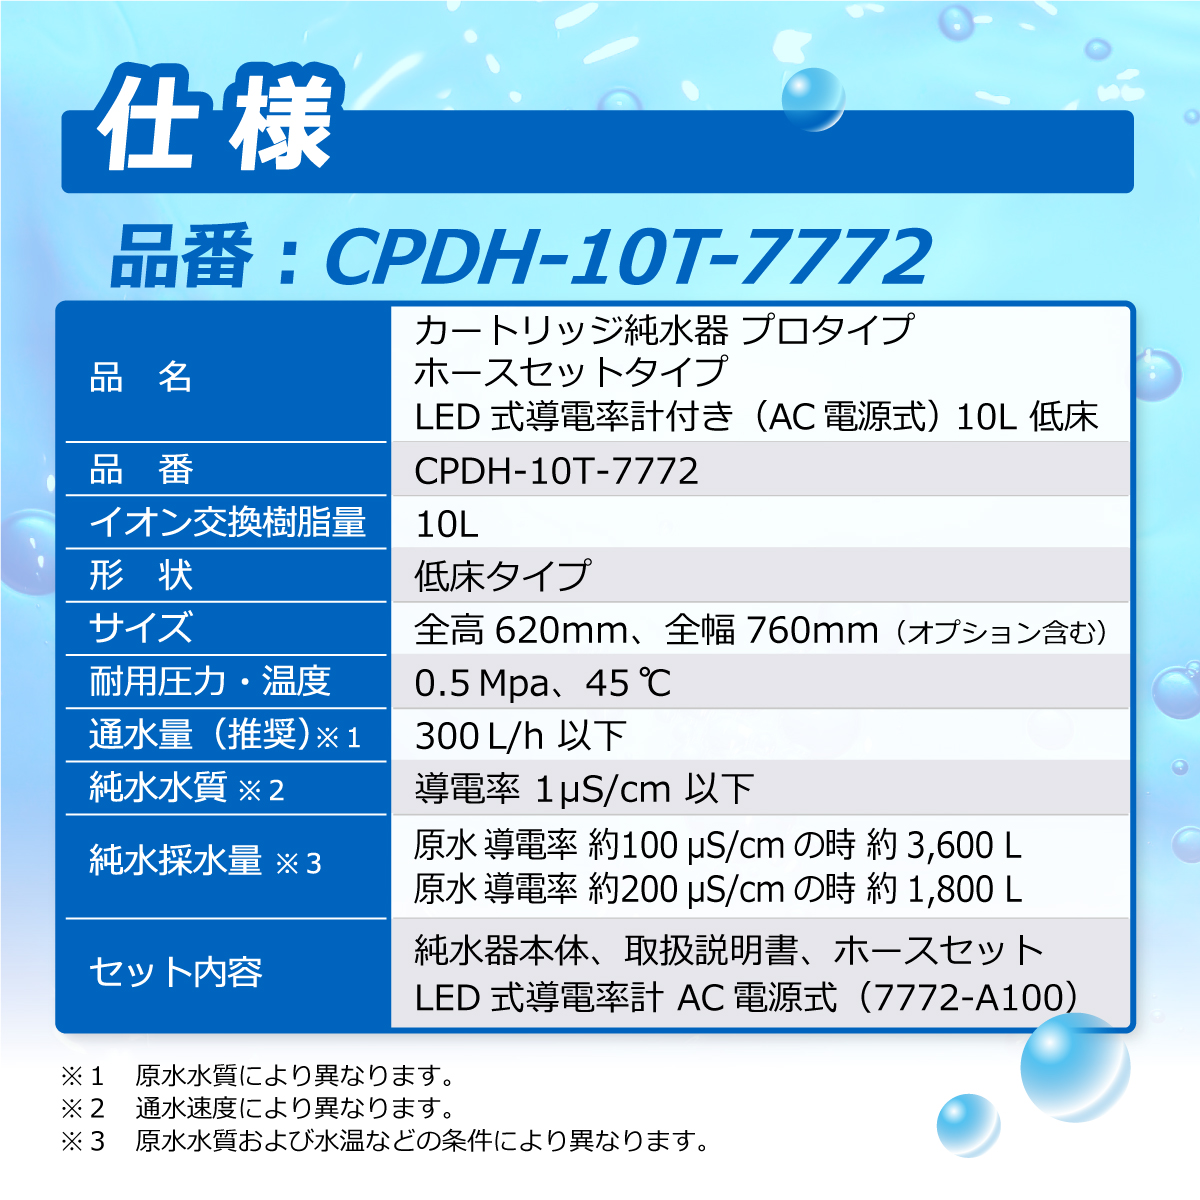 カートリッジ純水器 10L プロタイプ ホースセットタイプ LED式導電率計(AC電源式)付き 低床タイプ  CPDH-10T-7772 イオン交換樹脂 10L入り